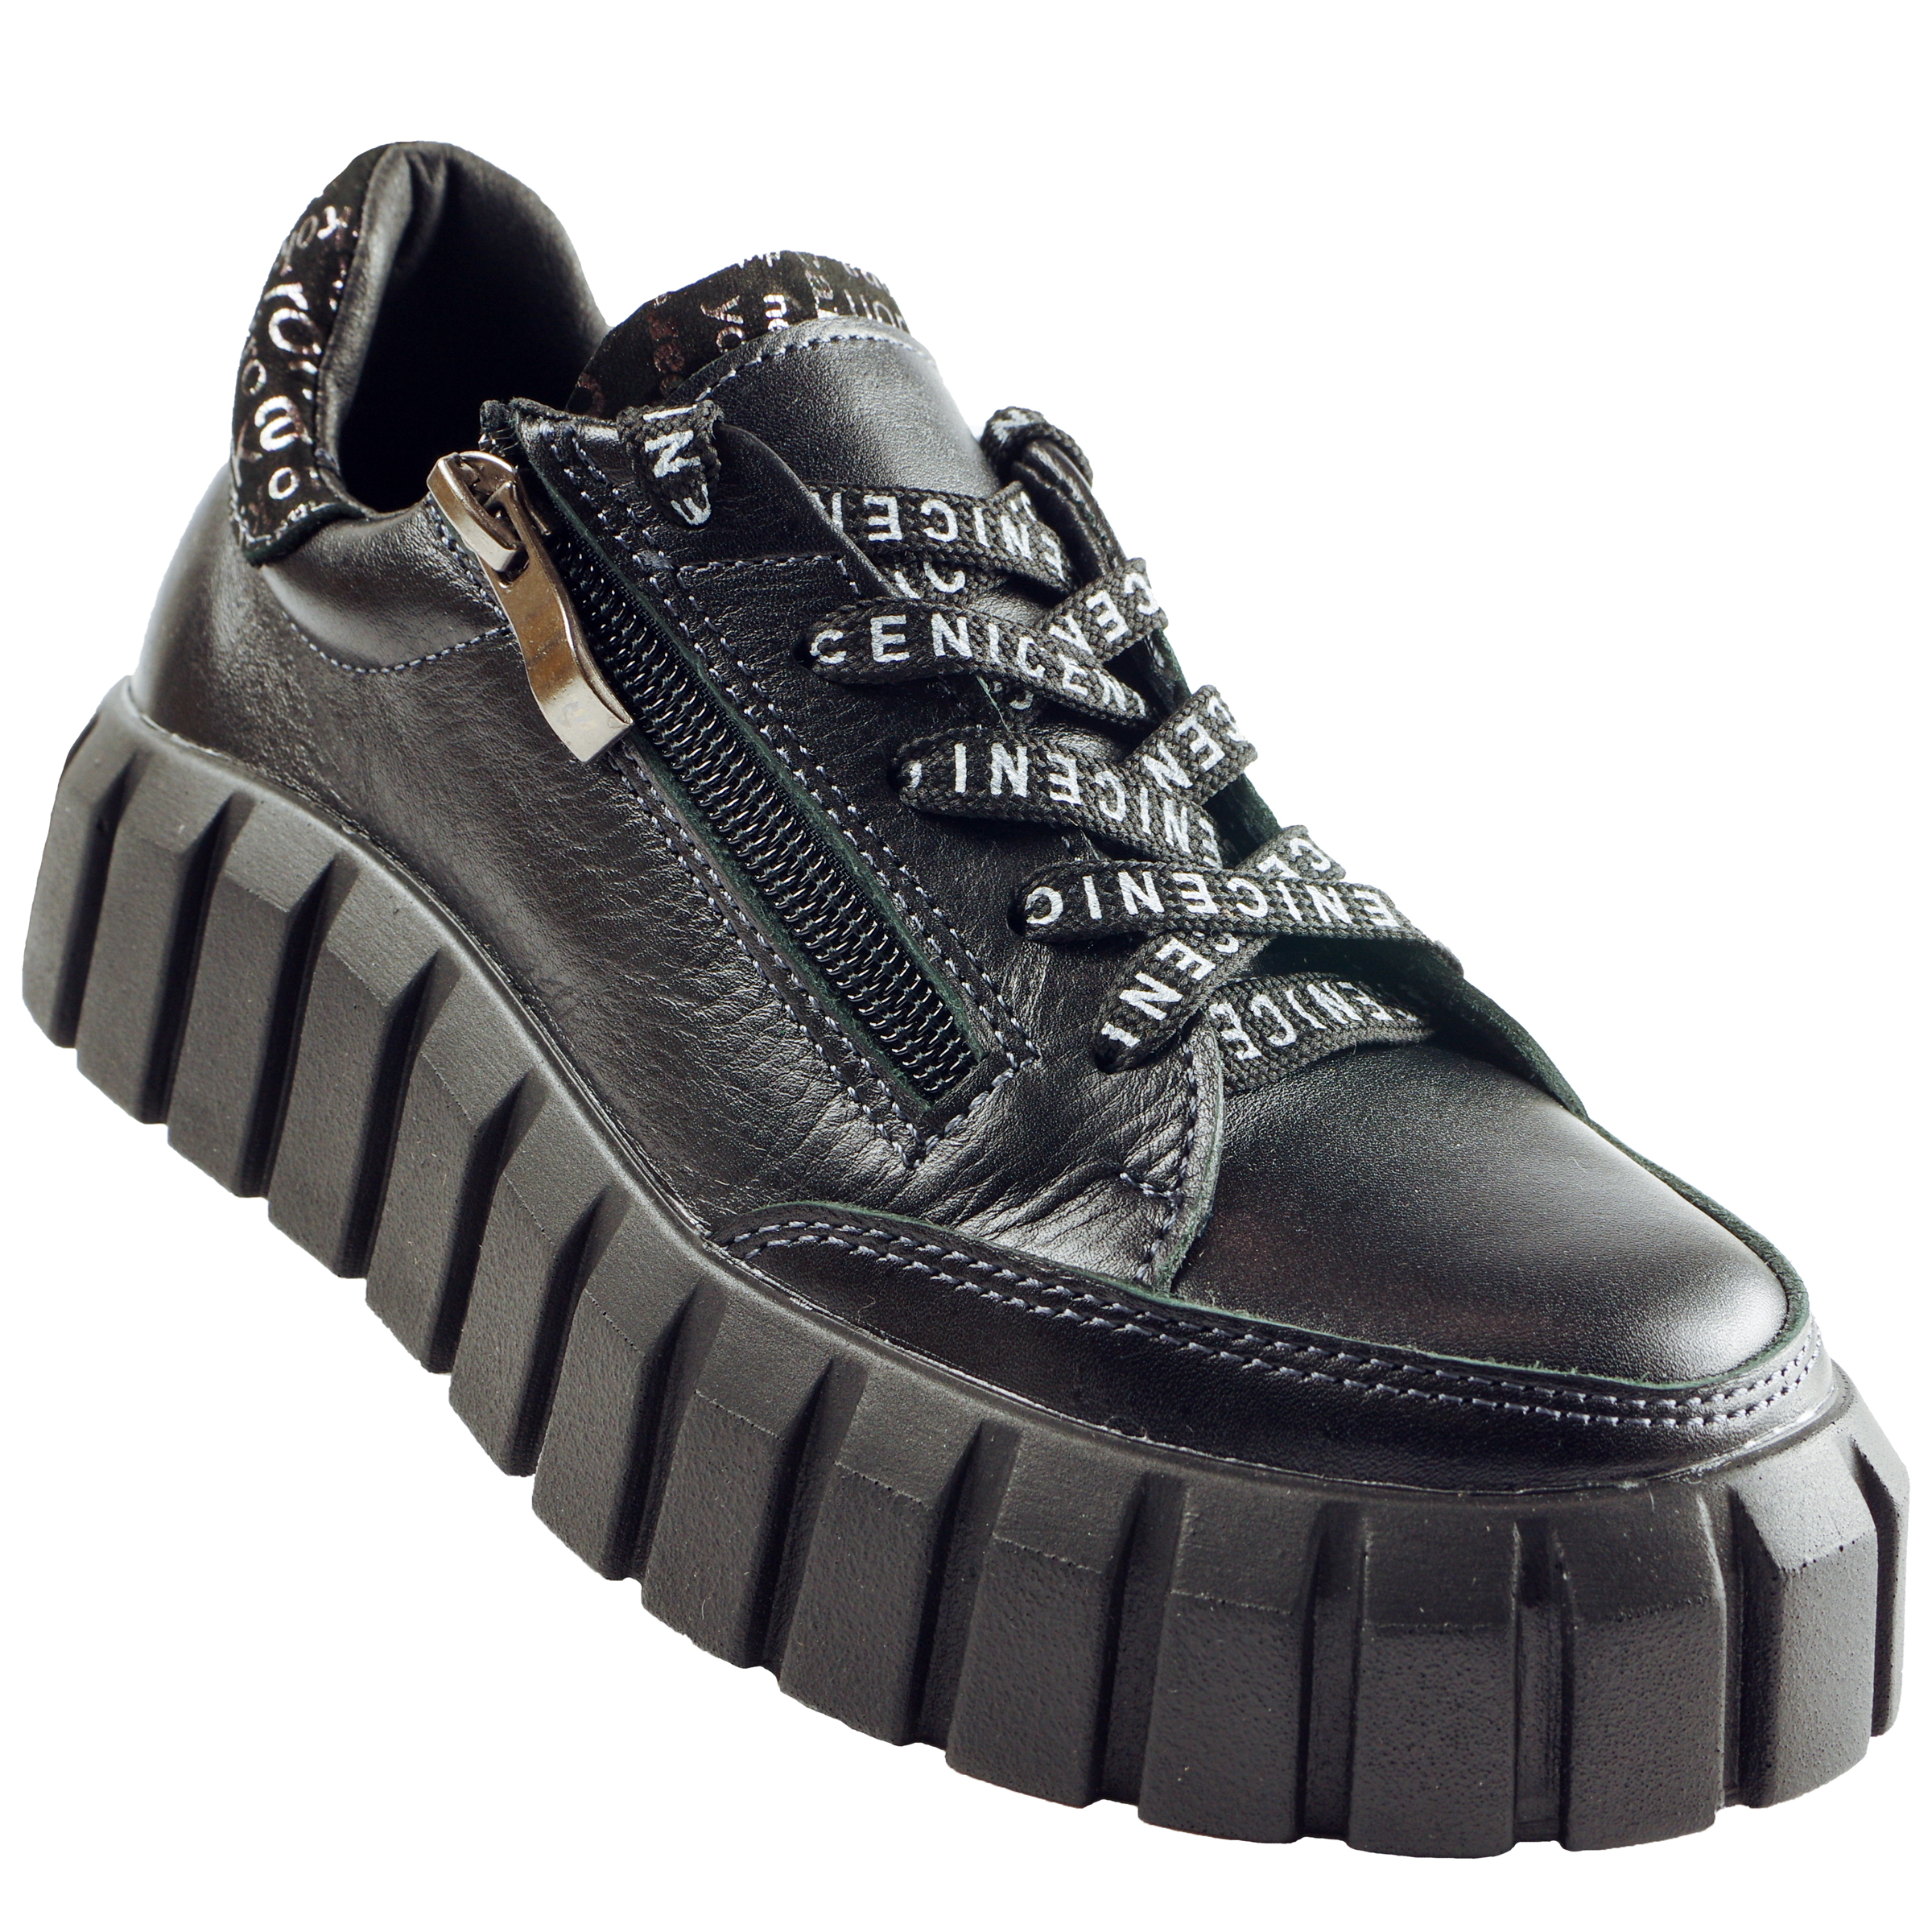 Туфлі дитячі (2117) для дівчинки, матеріал Натуральна шкіра, Чорний колір, 32-38 розміри – Sole Kids